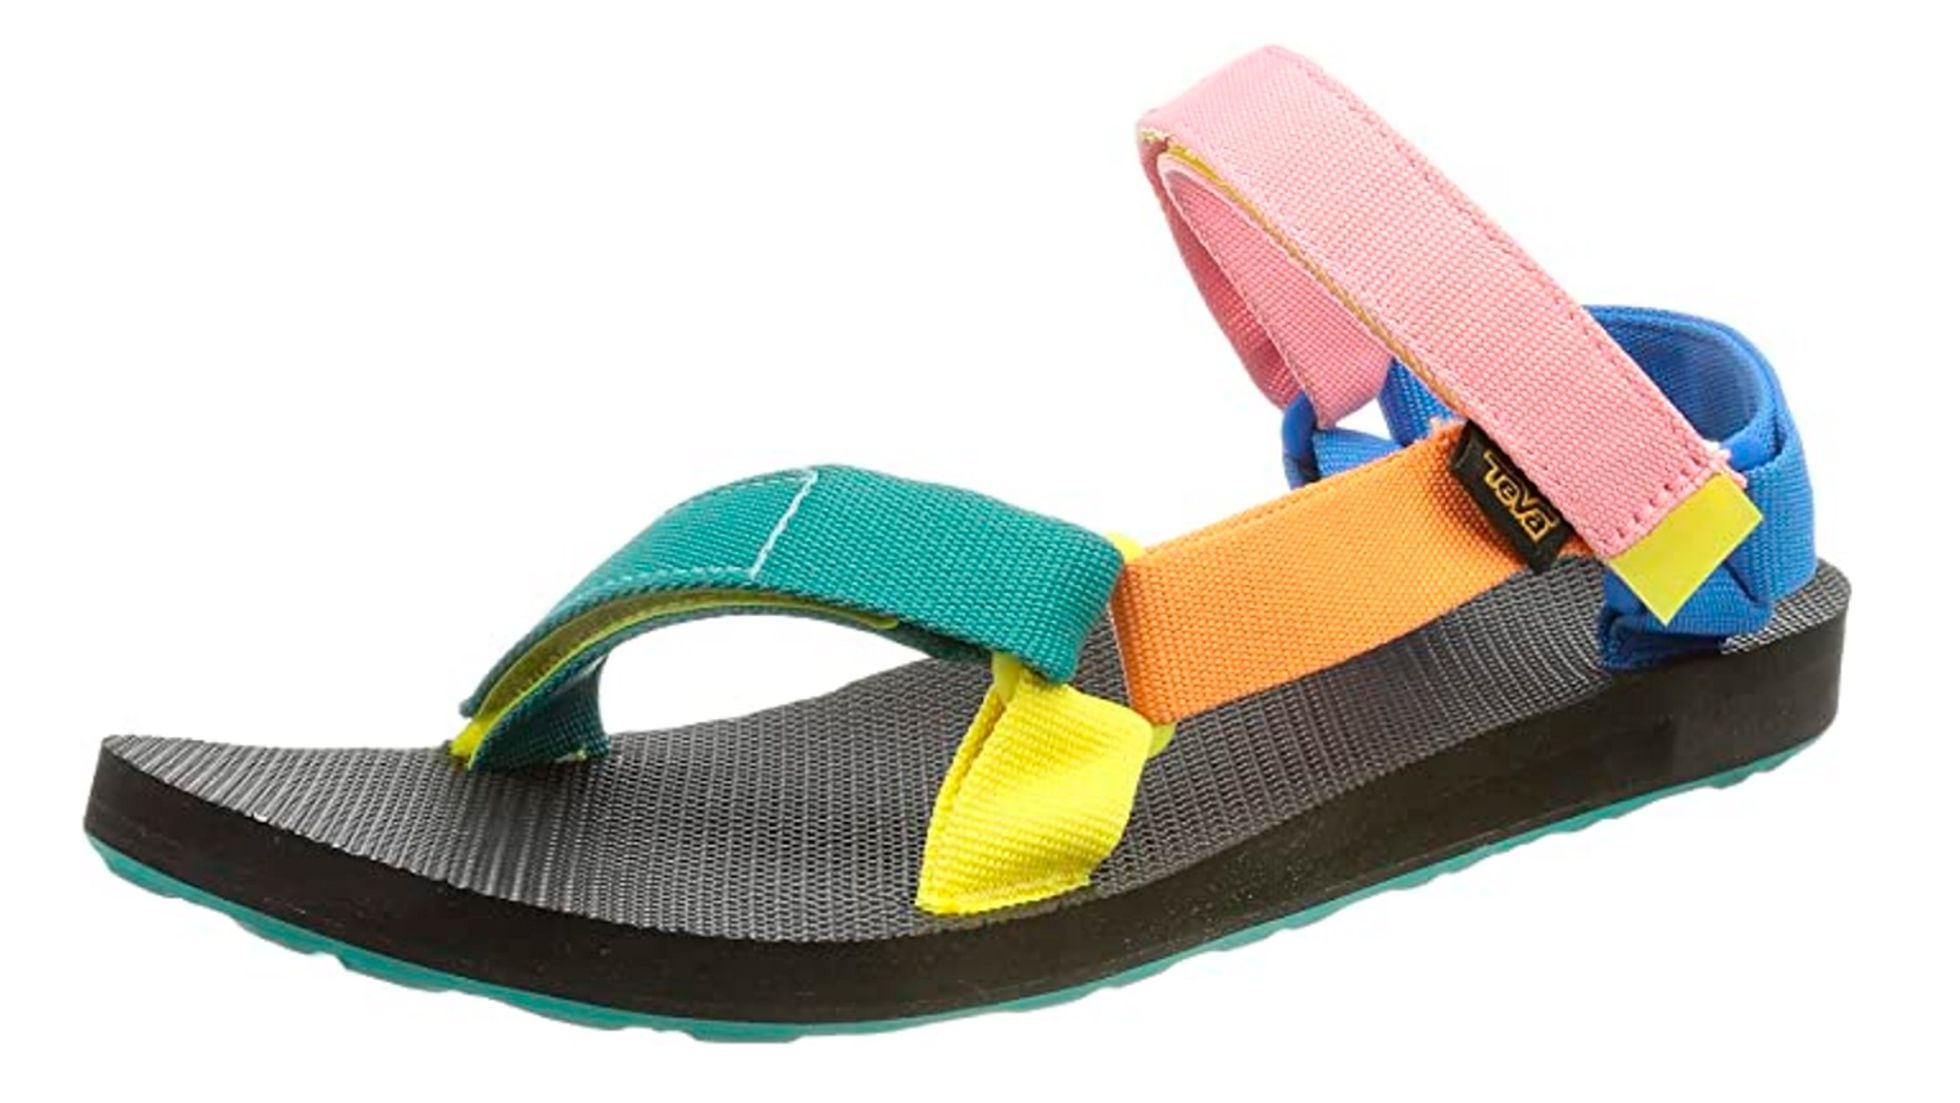 TEVA: Las sandalias tan cómodas como estilosas que llevan las 'influencers': son tendencia y con todo | Escaparate: compras y ofertas | EL PAÍS